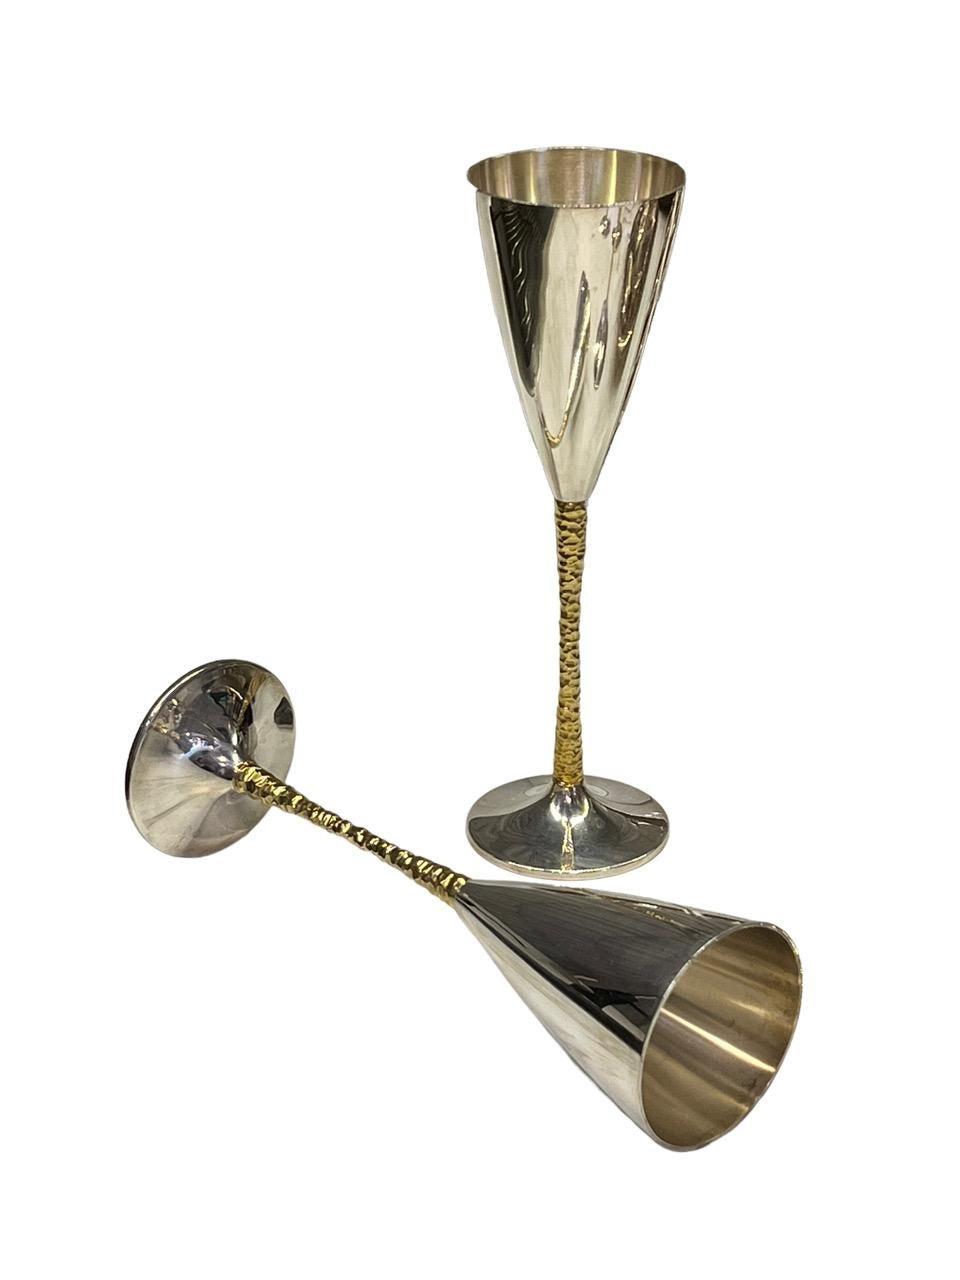 Stuart Devlin Set of 28 English Parcel-Gilt Sterling Silver & Gold Flutes For Sale 2